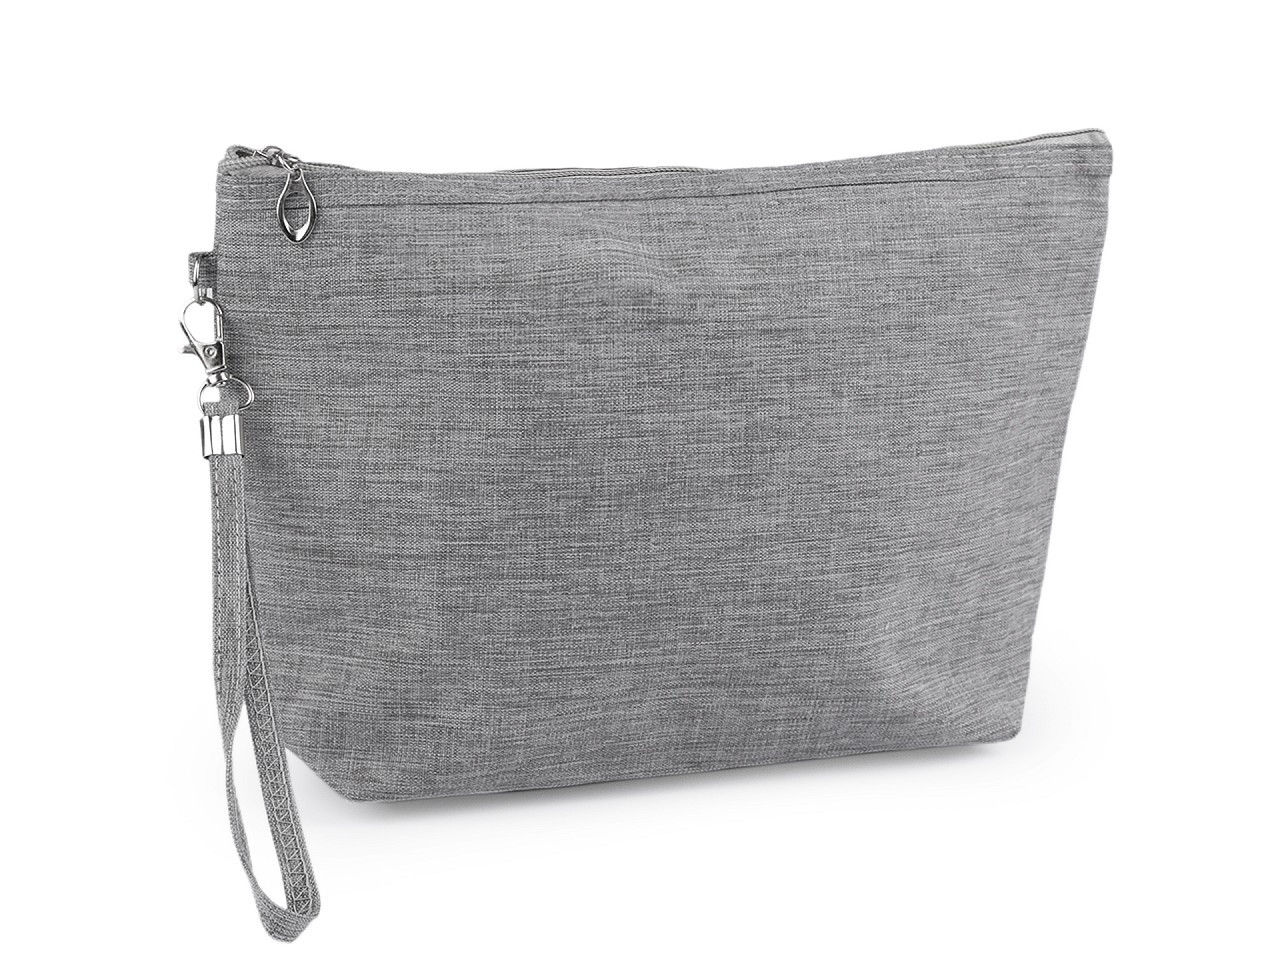 Kosmetická taška / pouzdro textilní 20x30 cm, barva 1 šedá žíhaná